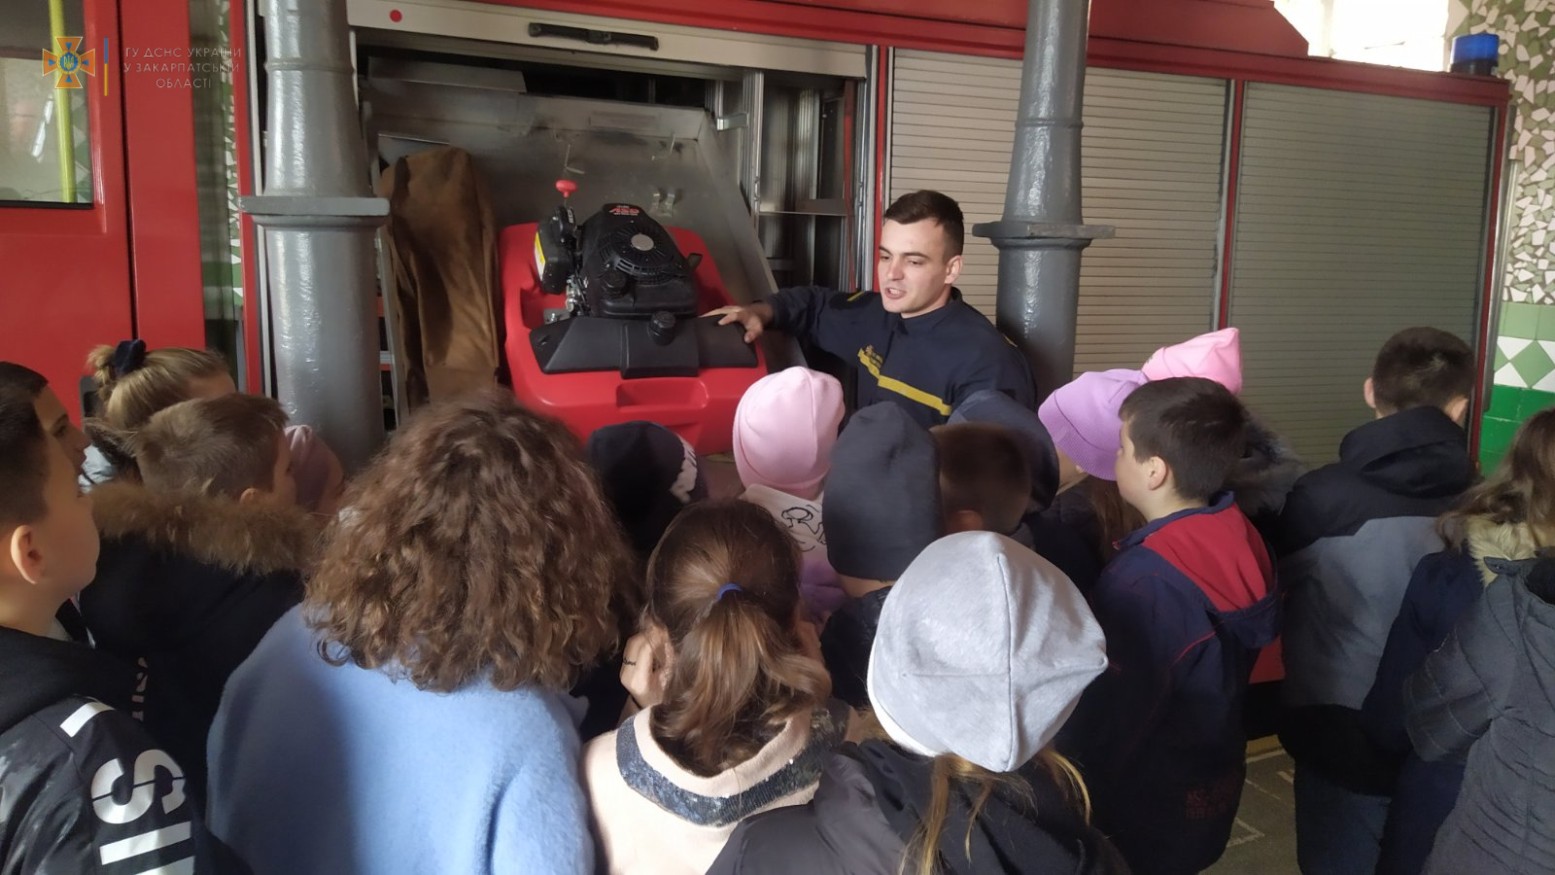 Сьогодні, 9 листопада, місцеві рятувальники радо зустрічали у себе шестикласників Мукачівської спеціалізованої школи І-ІІІ ступенів №4 для знайомства та навчання правила безпечного життя.